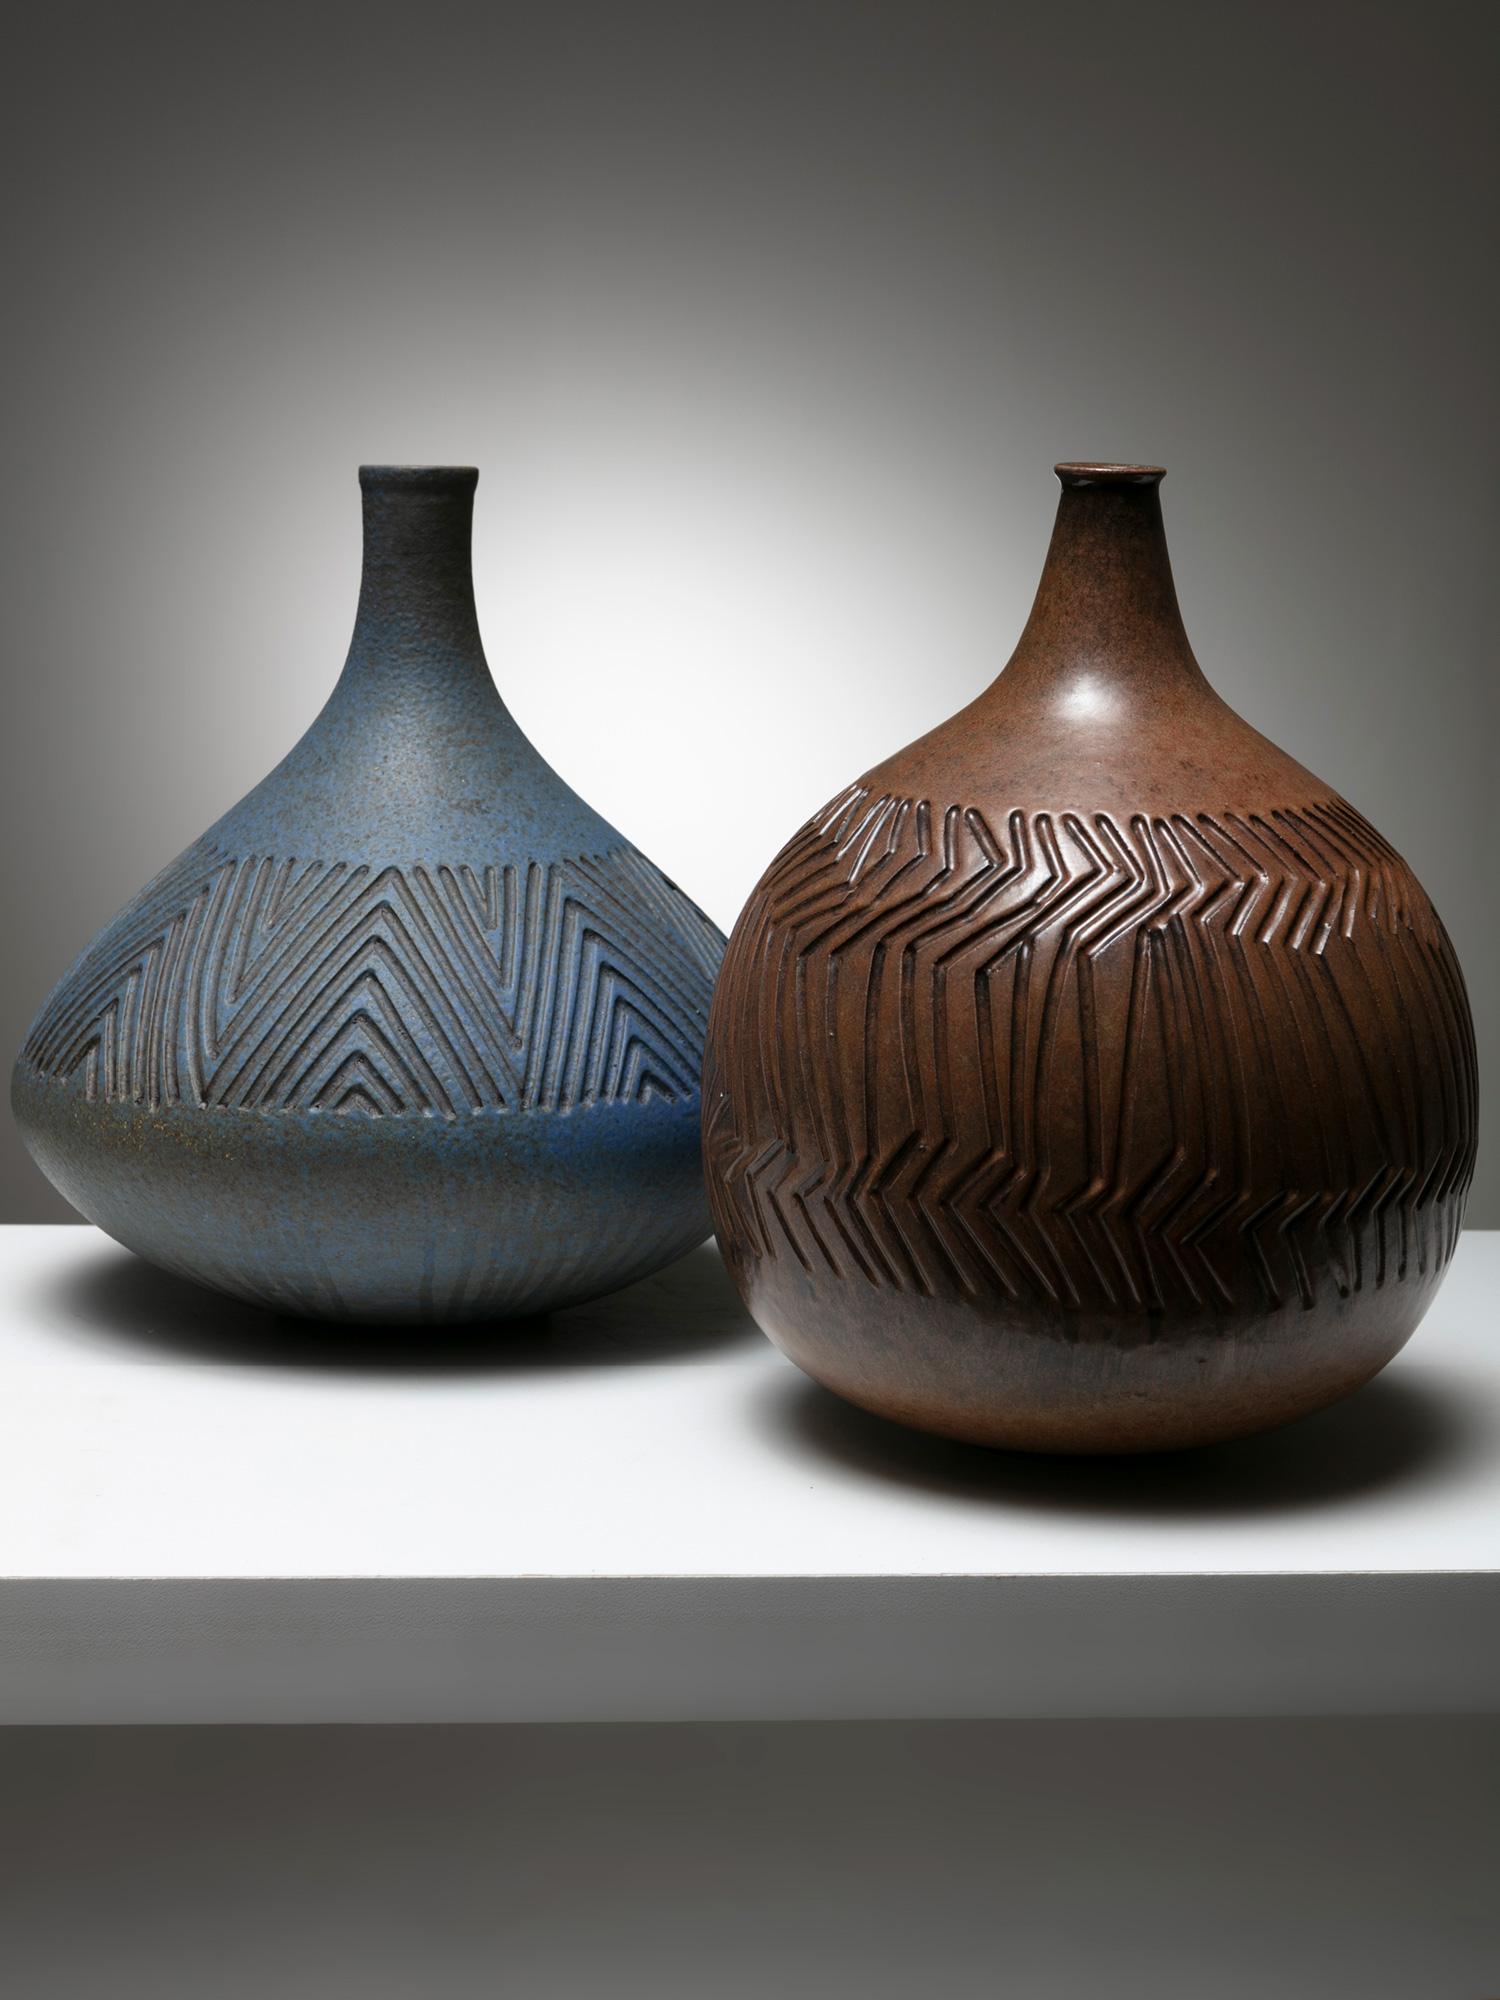 Vases robustes en céramique avec une texture de surface géométrique détaillée.
Légères différences de formes et de tailles.